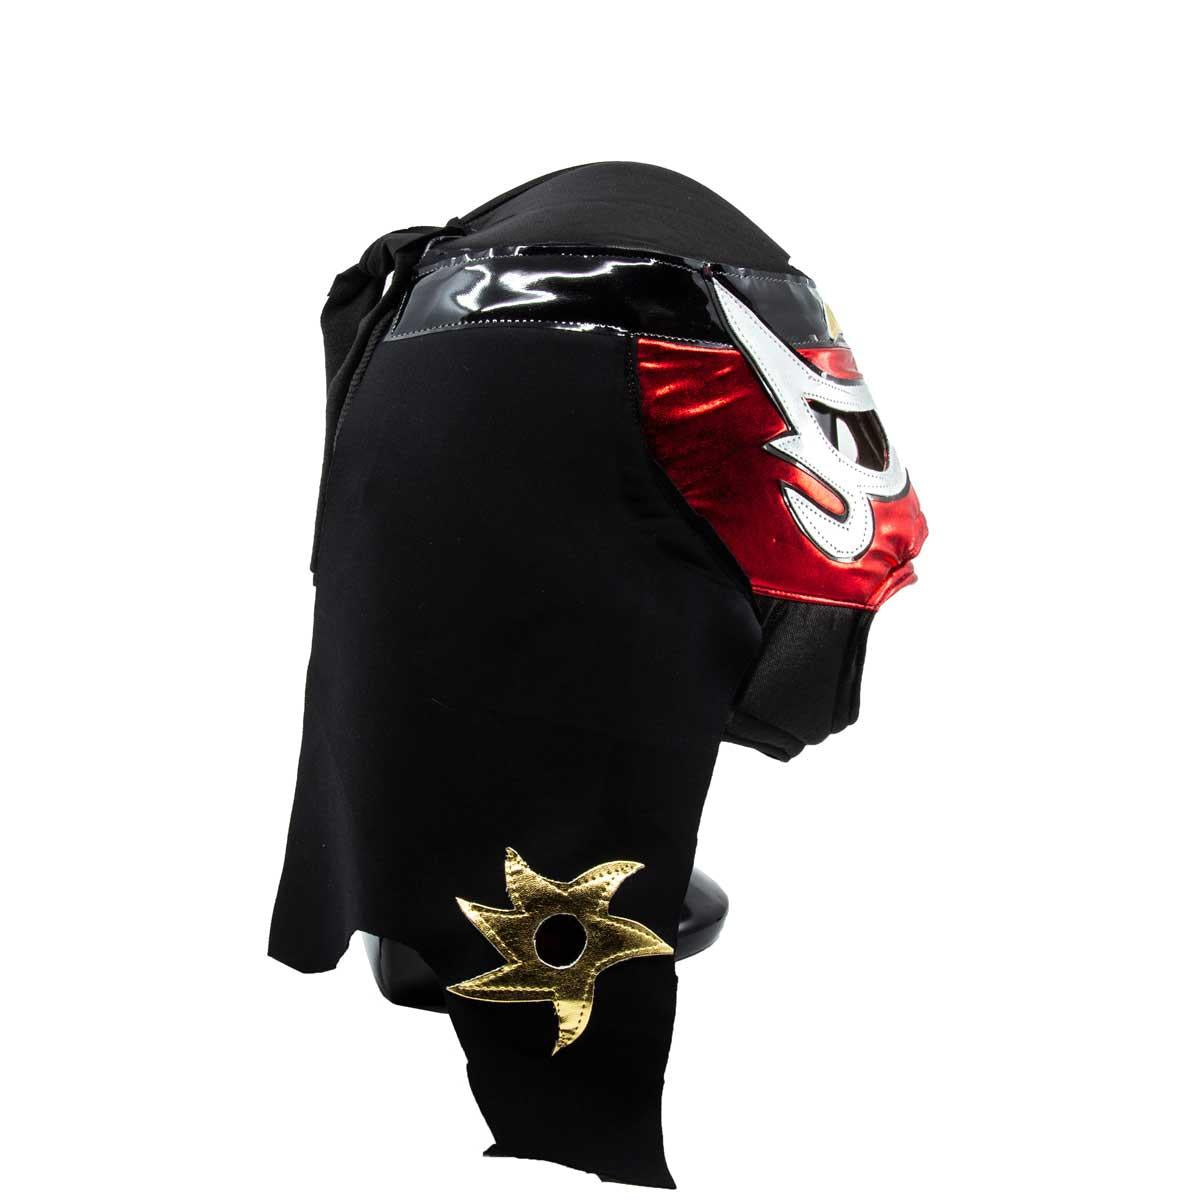 Máscara Lucha Libre AAA Pentagón Rojo-Negra-Oro MAS-A-002